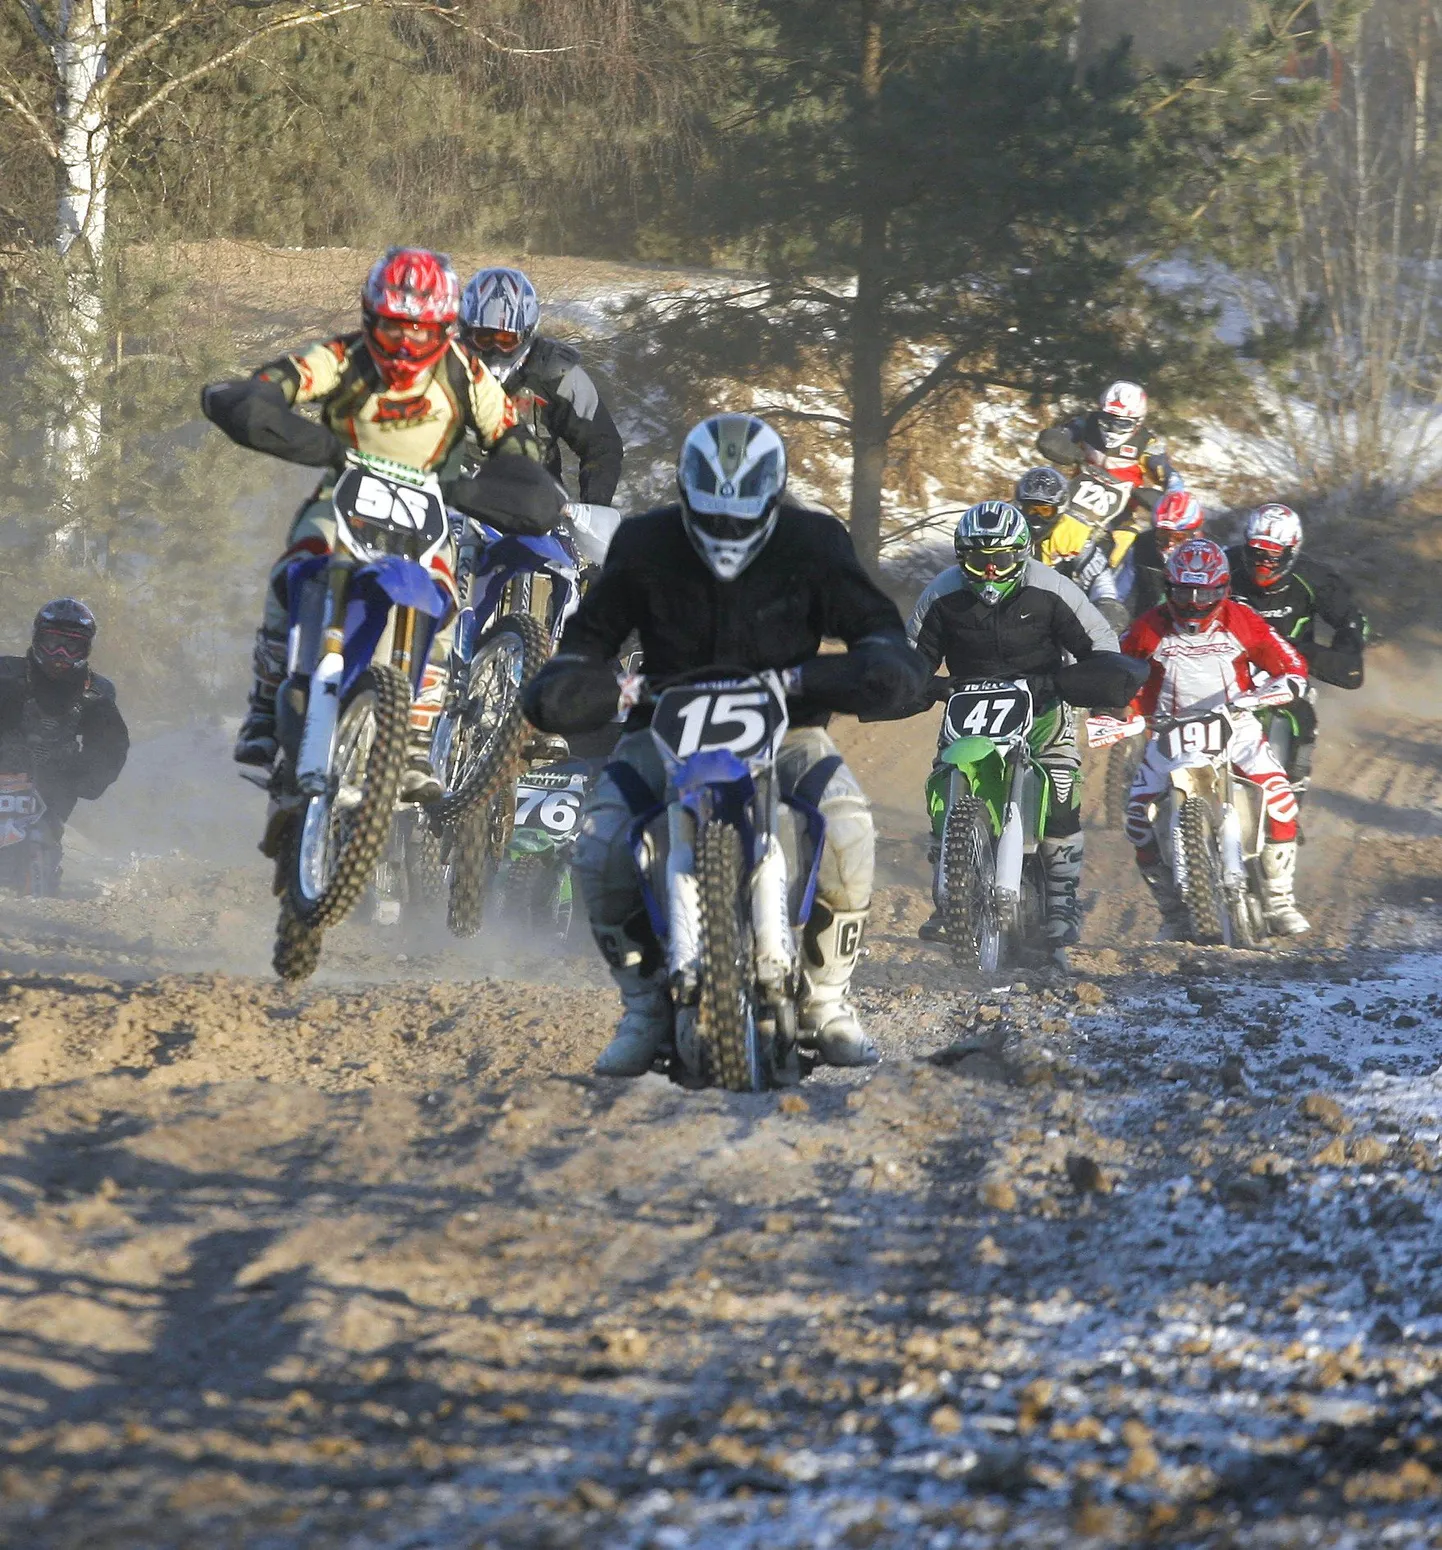 Täna on Holstre-Nõmmel Viljandi talvekross. Pilt on tehtud aasta eest sealsamas peetud motokrossil.